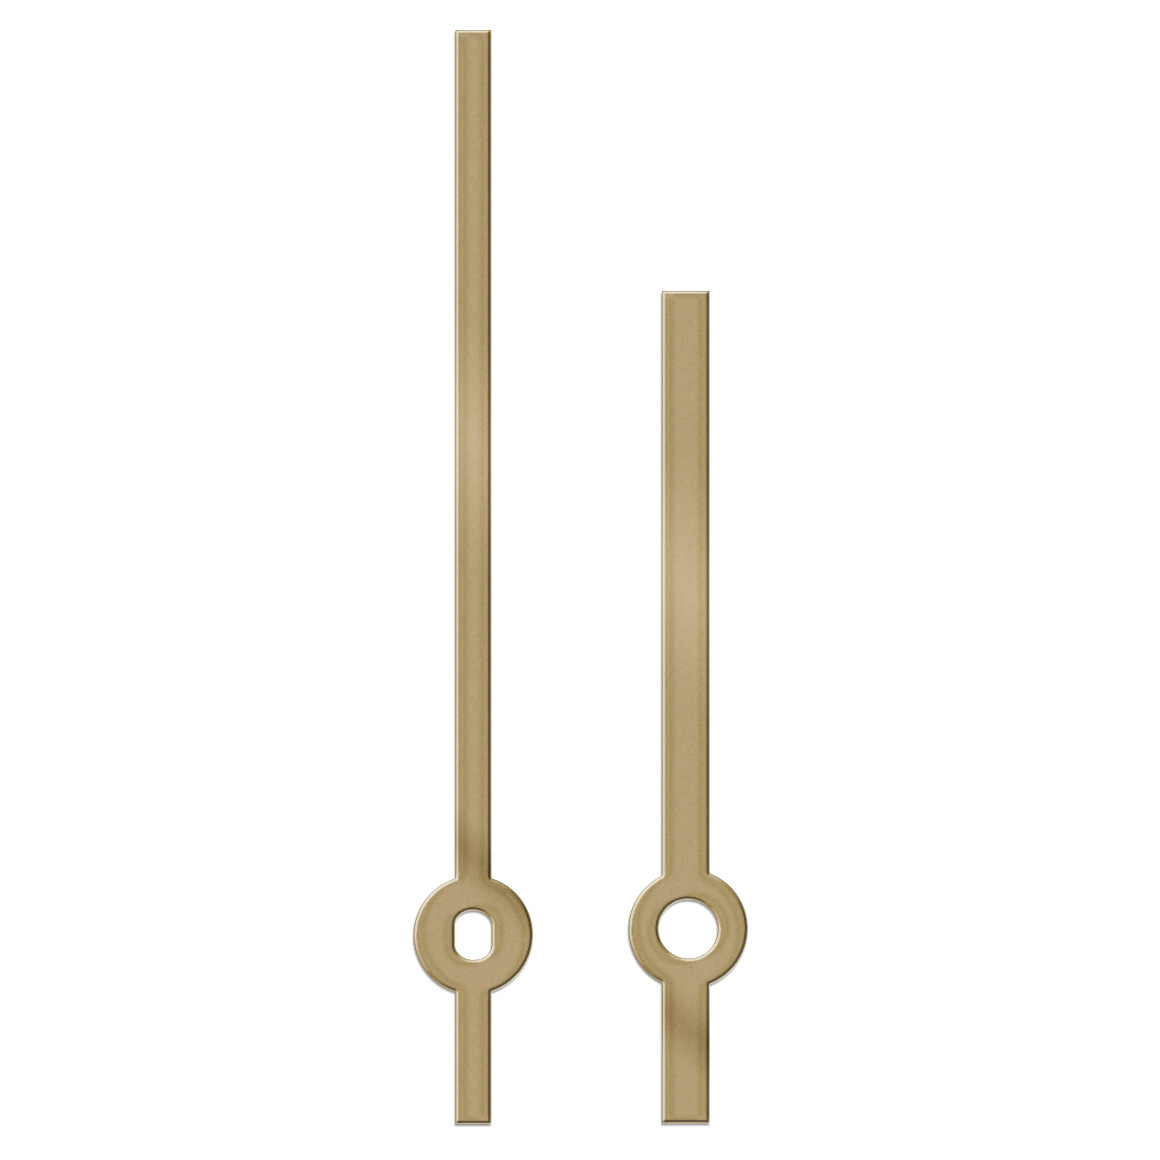 Paire d'aiguilles, baton, longueur 76 mm,
aluminium, doré, pour grandes horloges